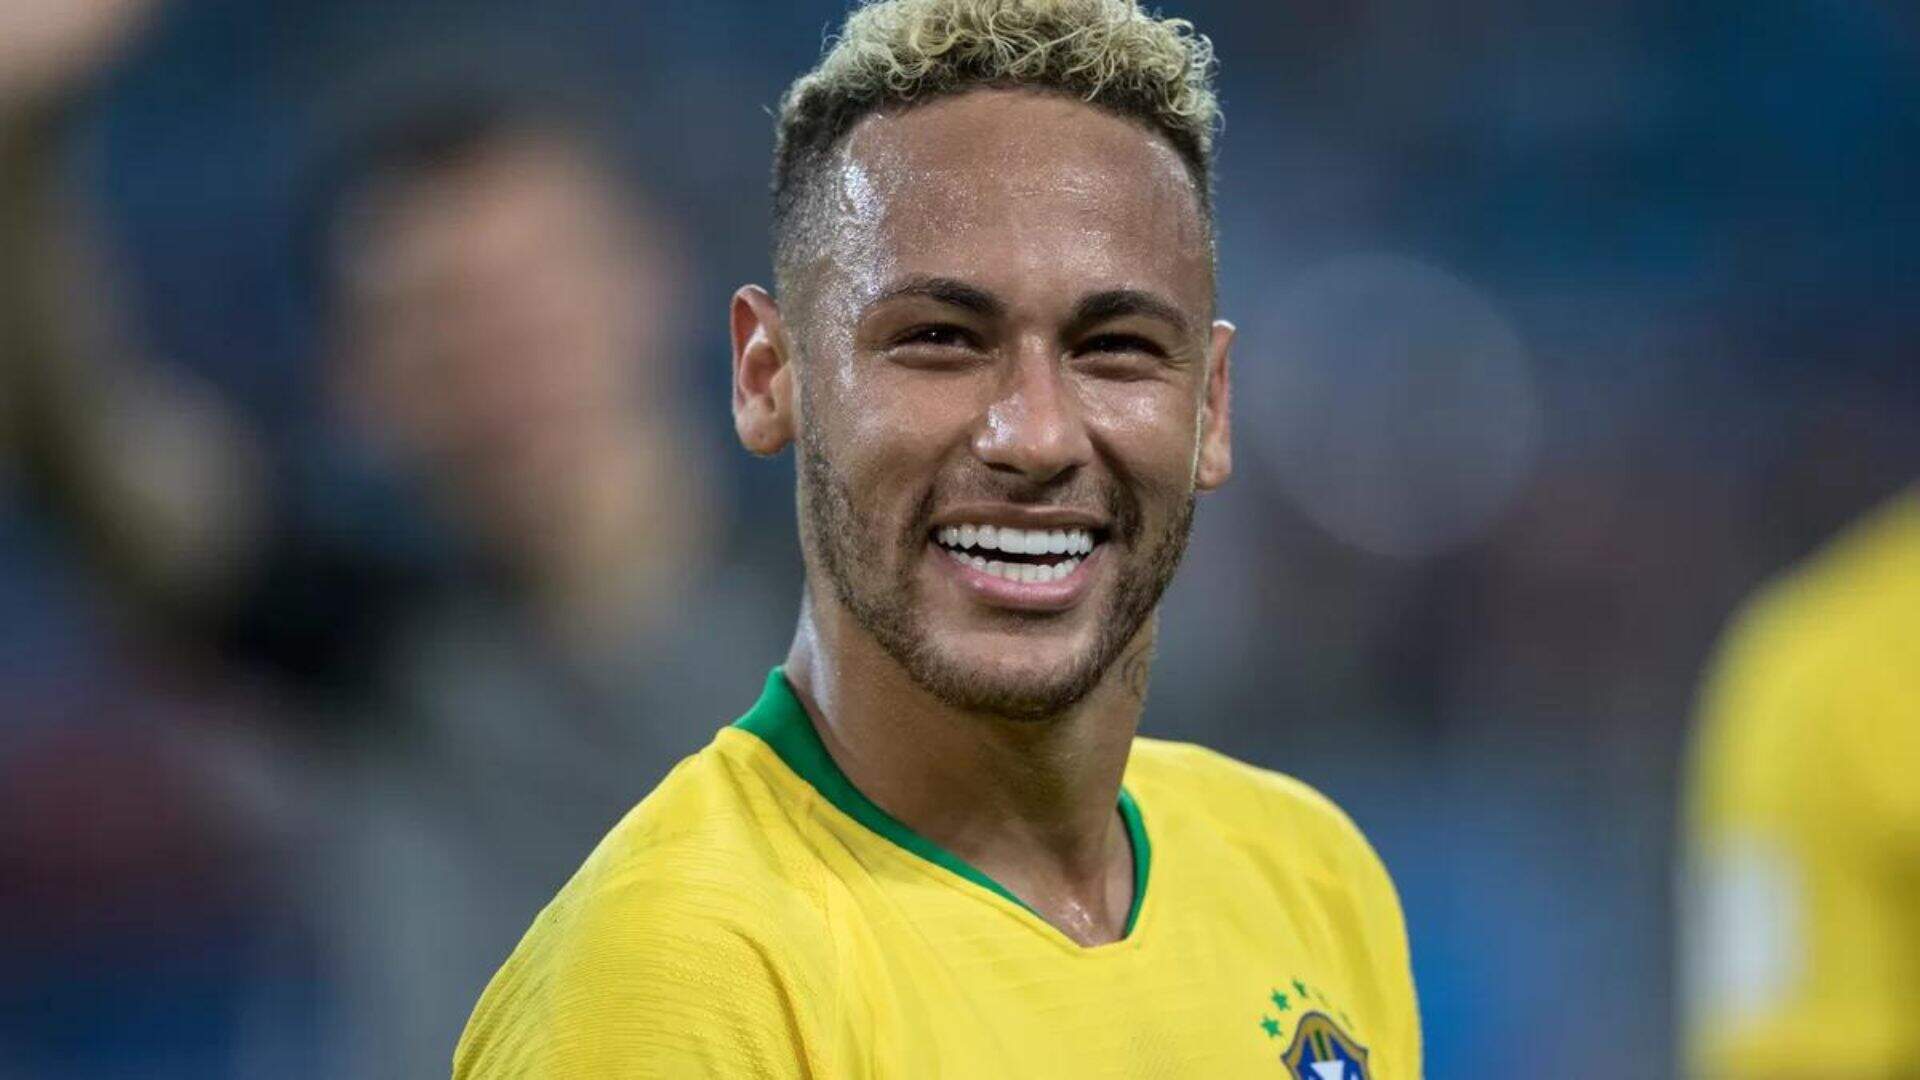 Neymar é exposto por influenciadora e faz comentário inusitado: “Não sou sujo igual essas pessoas” - Metropolitana FM